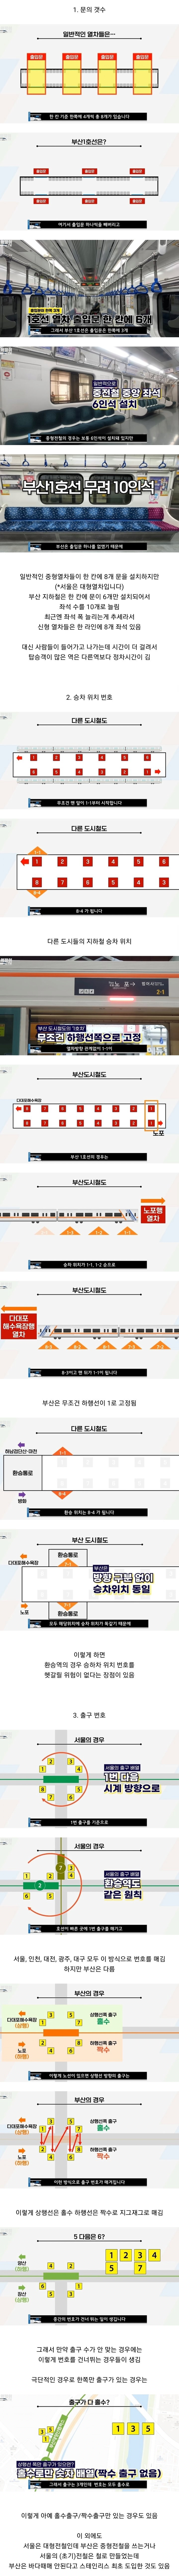 서울과는 사뭇 다른 부산의 지하철 시스템.jpg